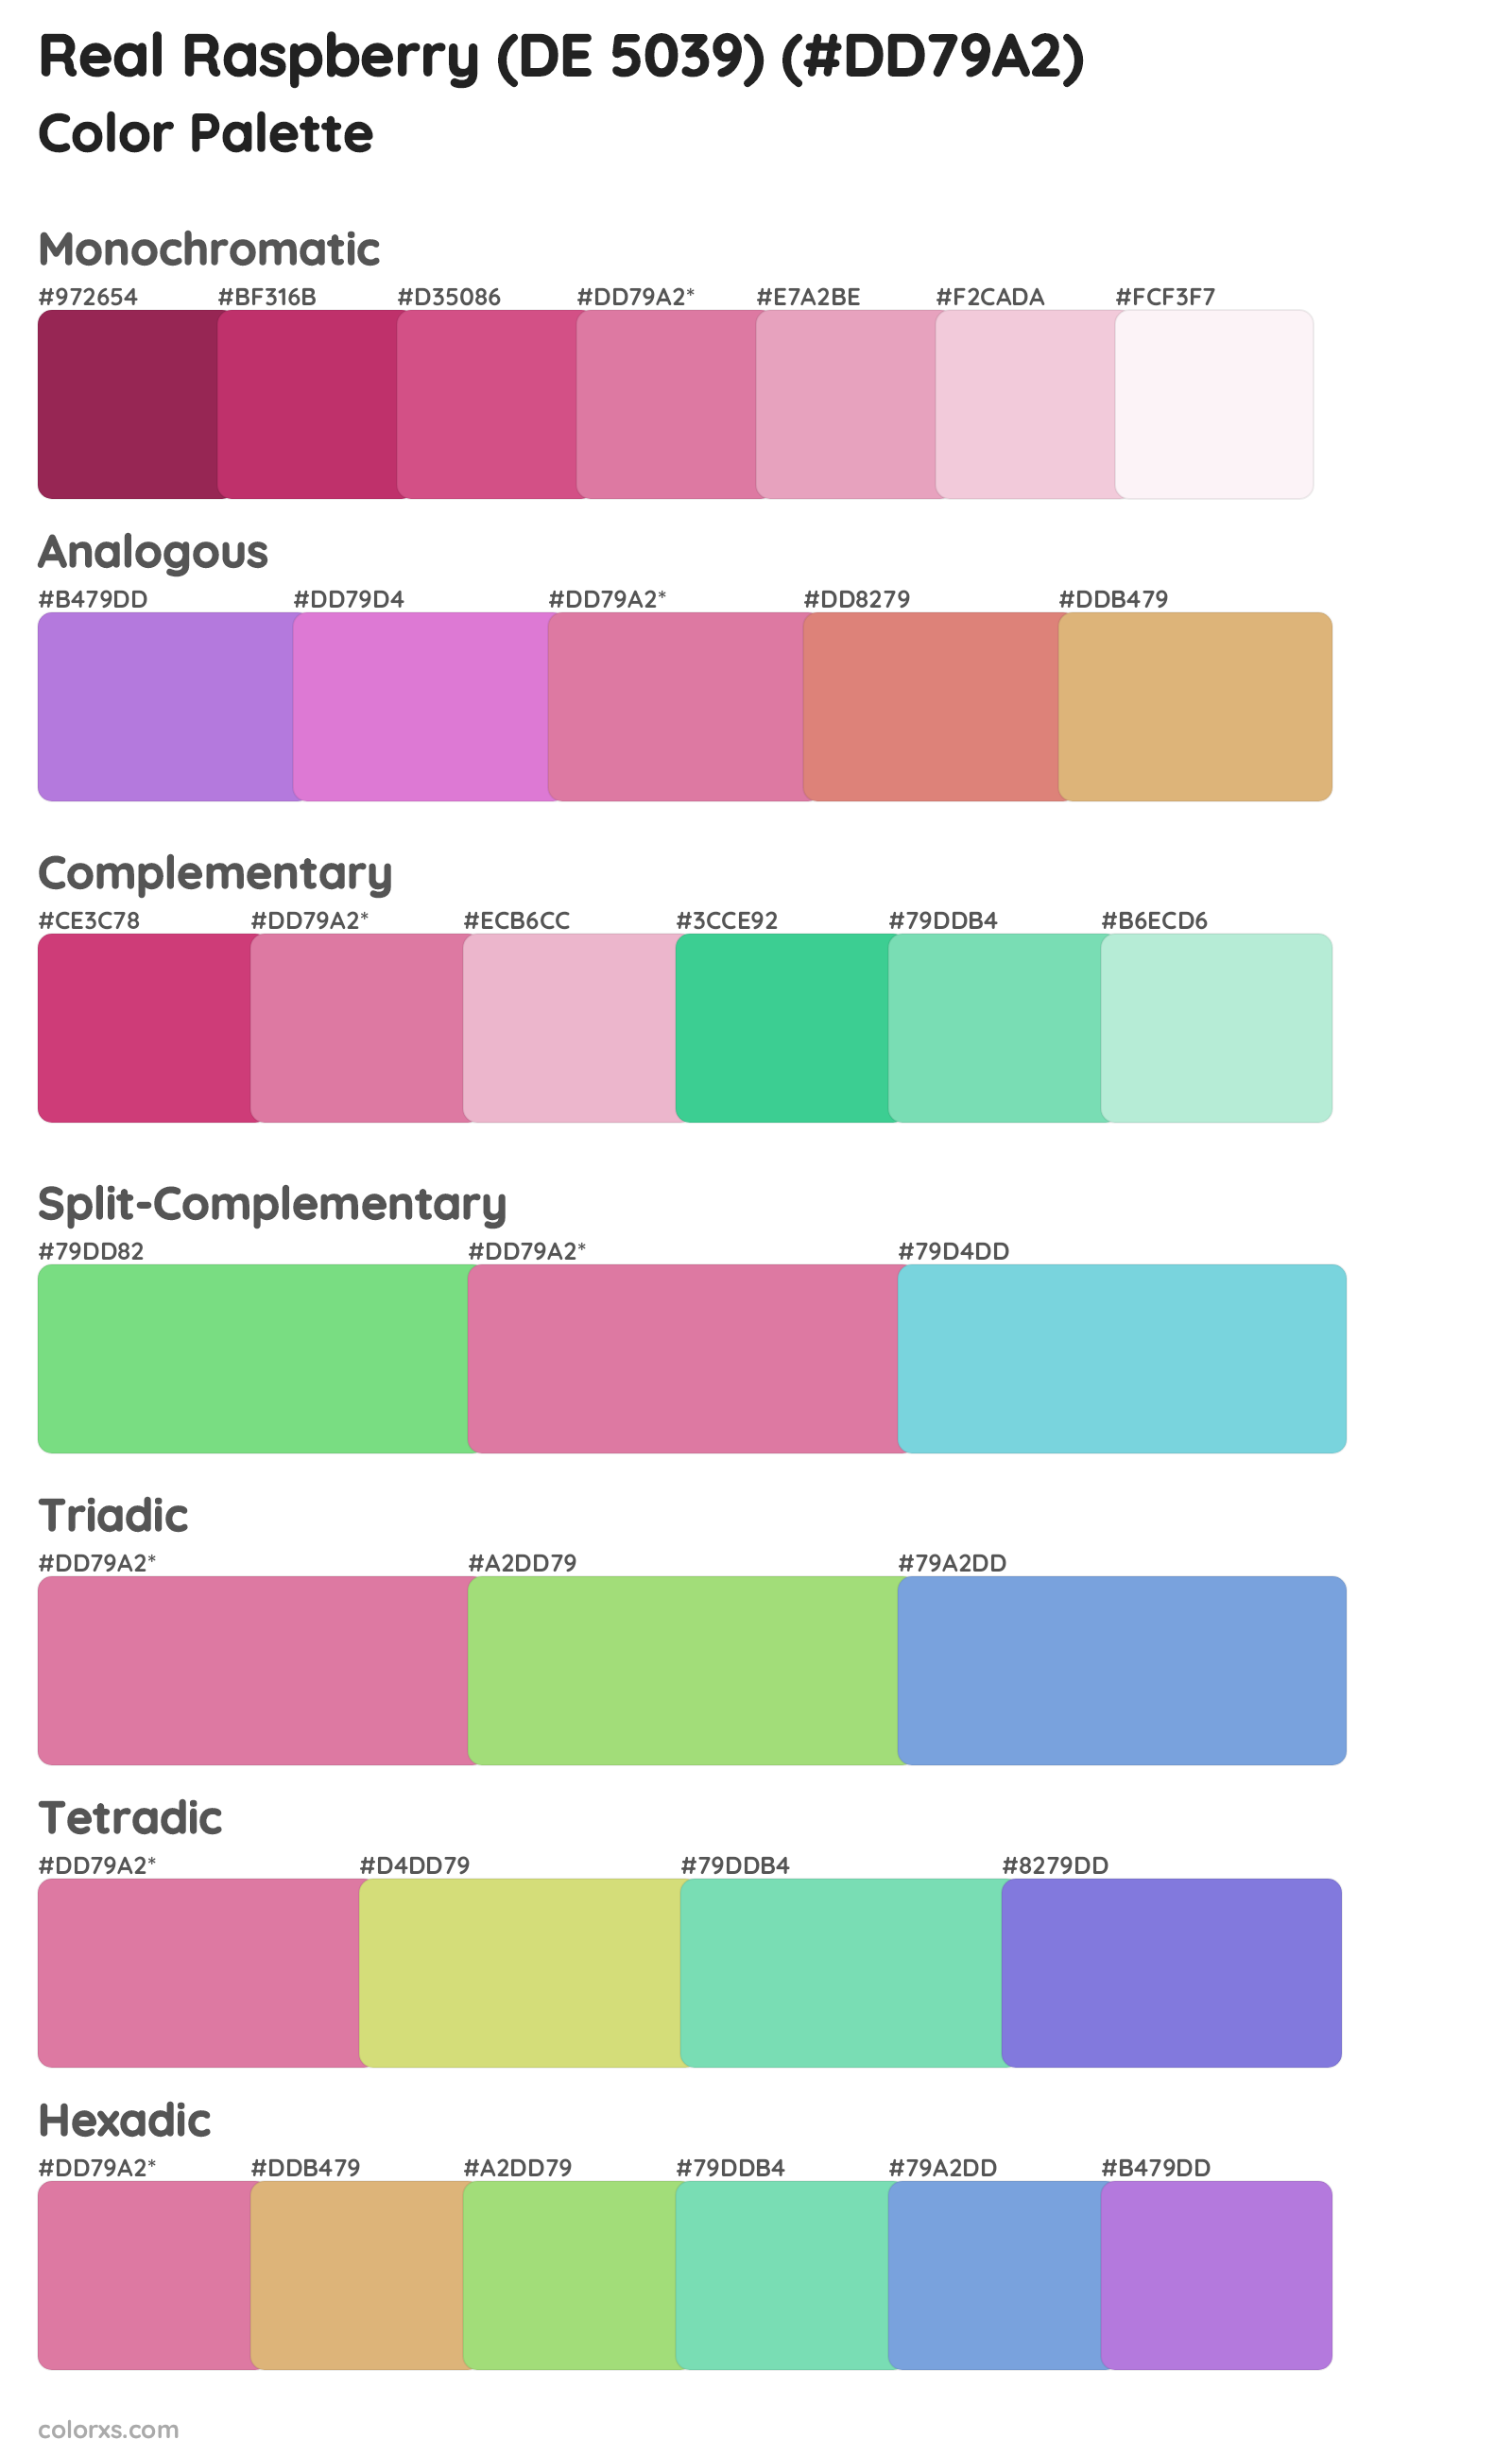 Real Raspberry (DE 5039) Color Scheme Palettes